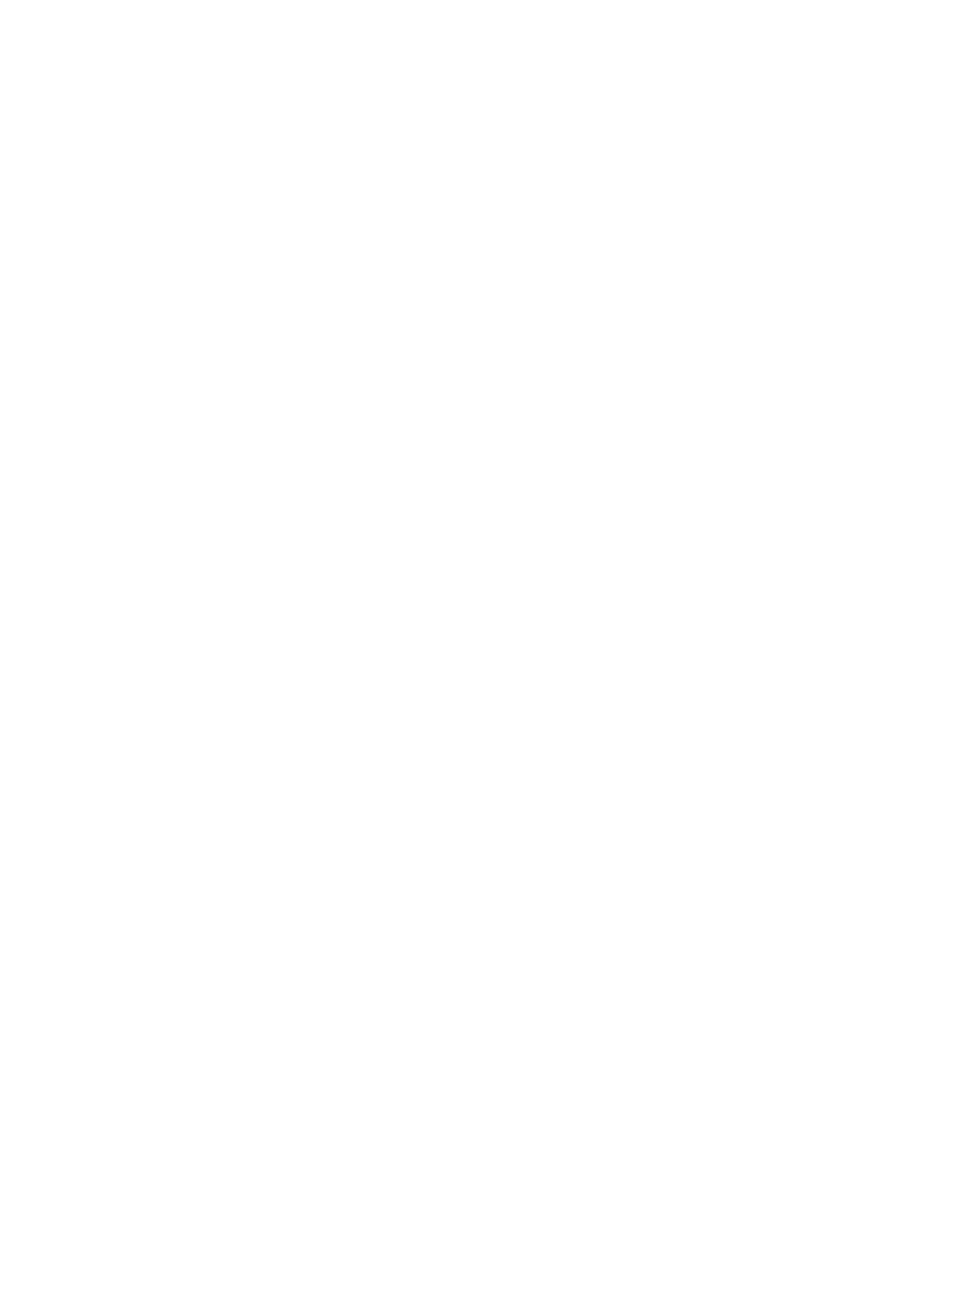 Deutschlandweite Landwirtschaftsberatung und Agrarberatung